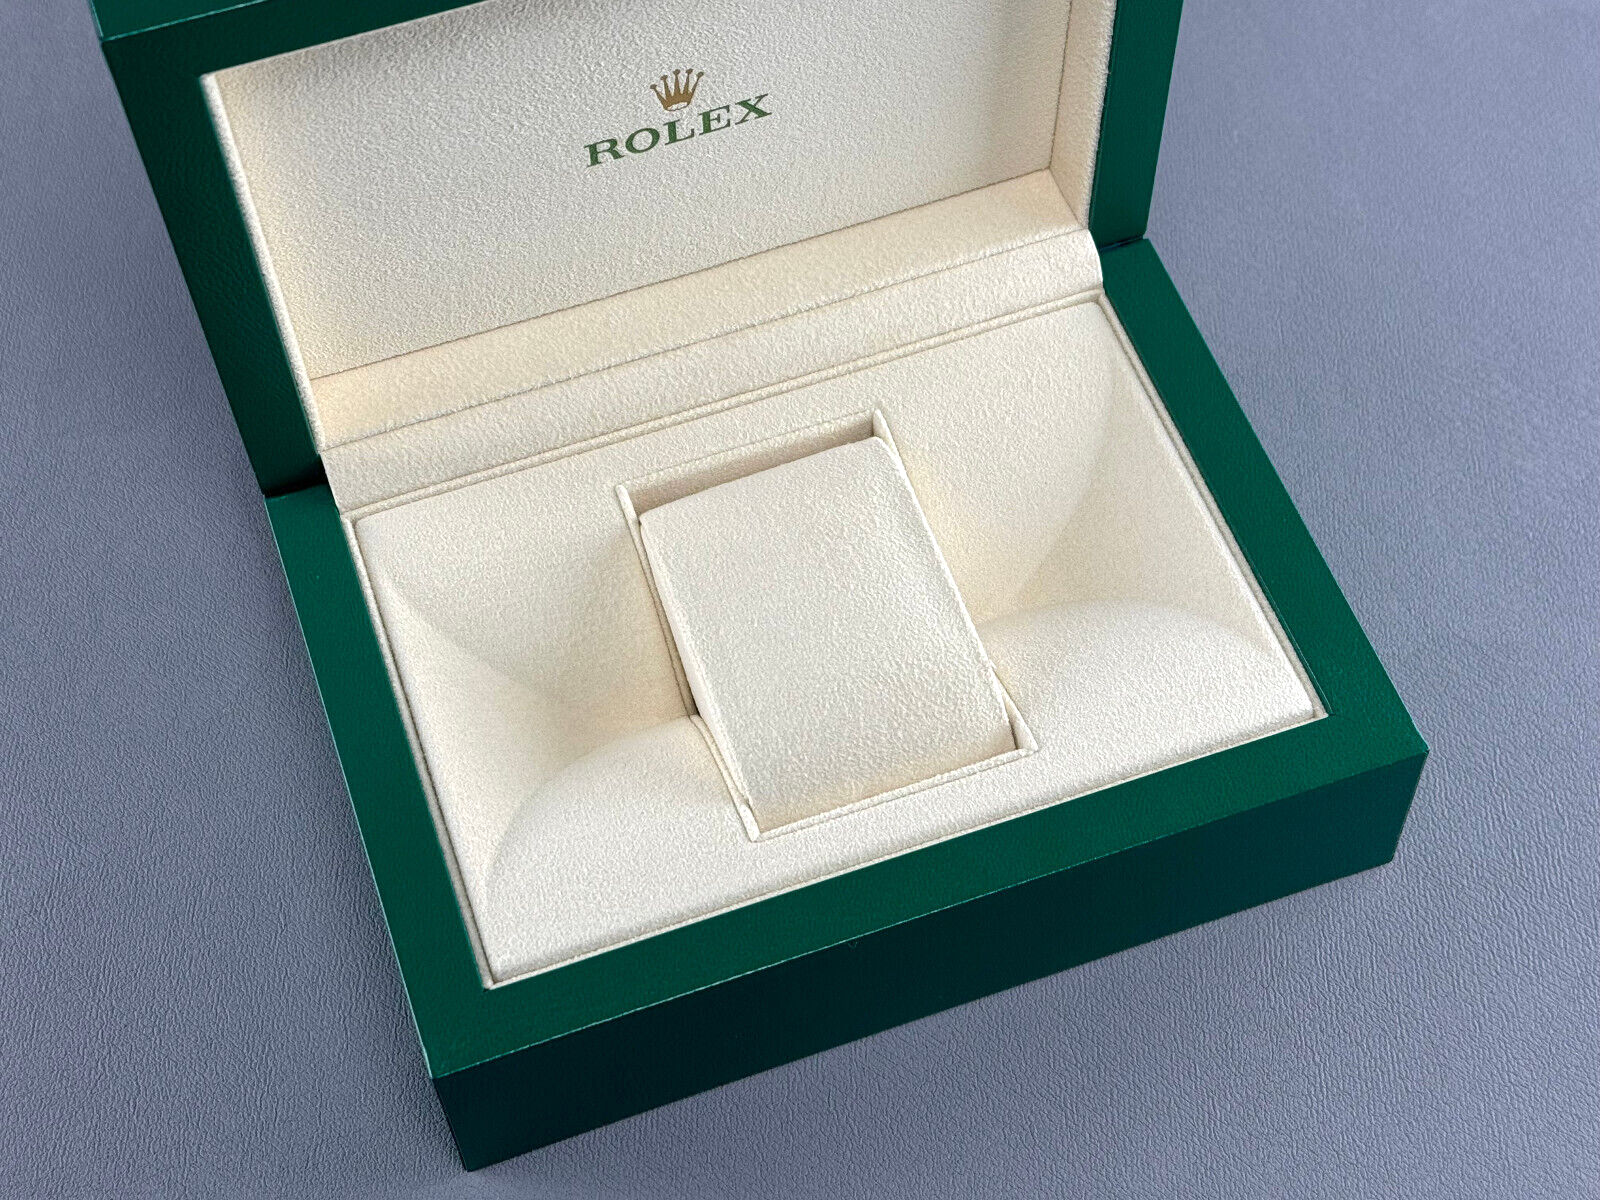 Rolex Oyster Box Größe M 39139.71